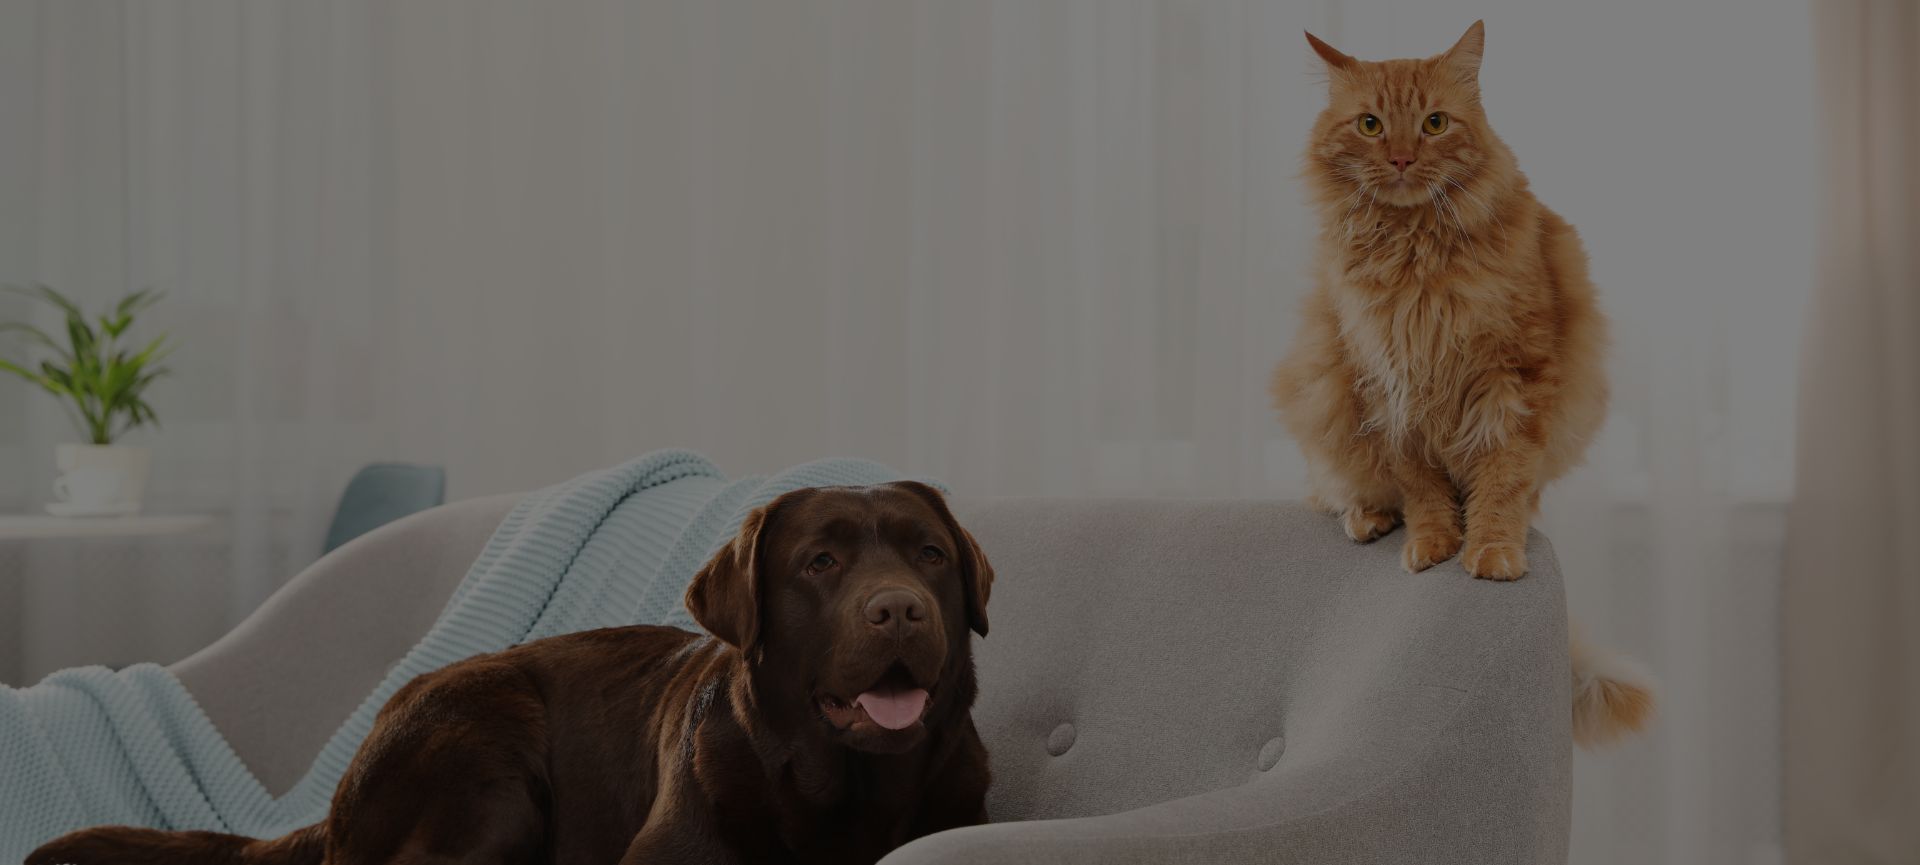 Pulire la casa in presenza di animali domestici: consigli e accessori -  Cose di Casa